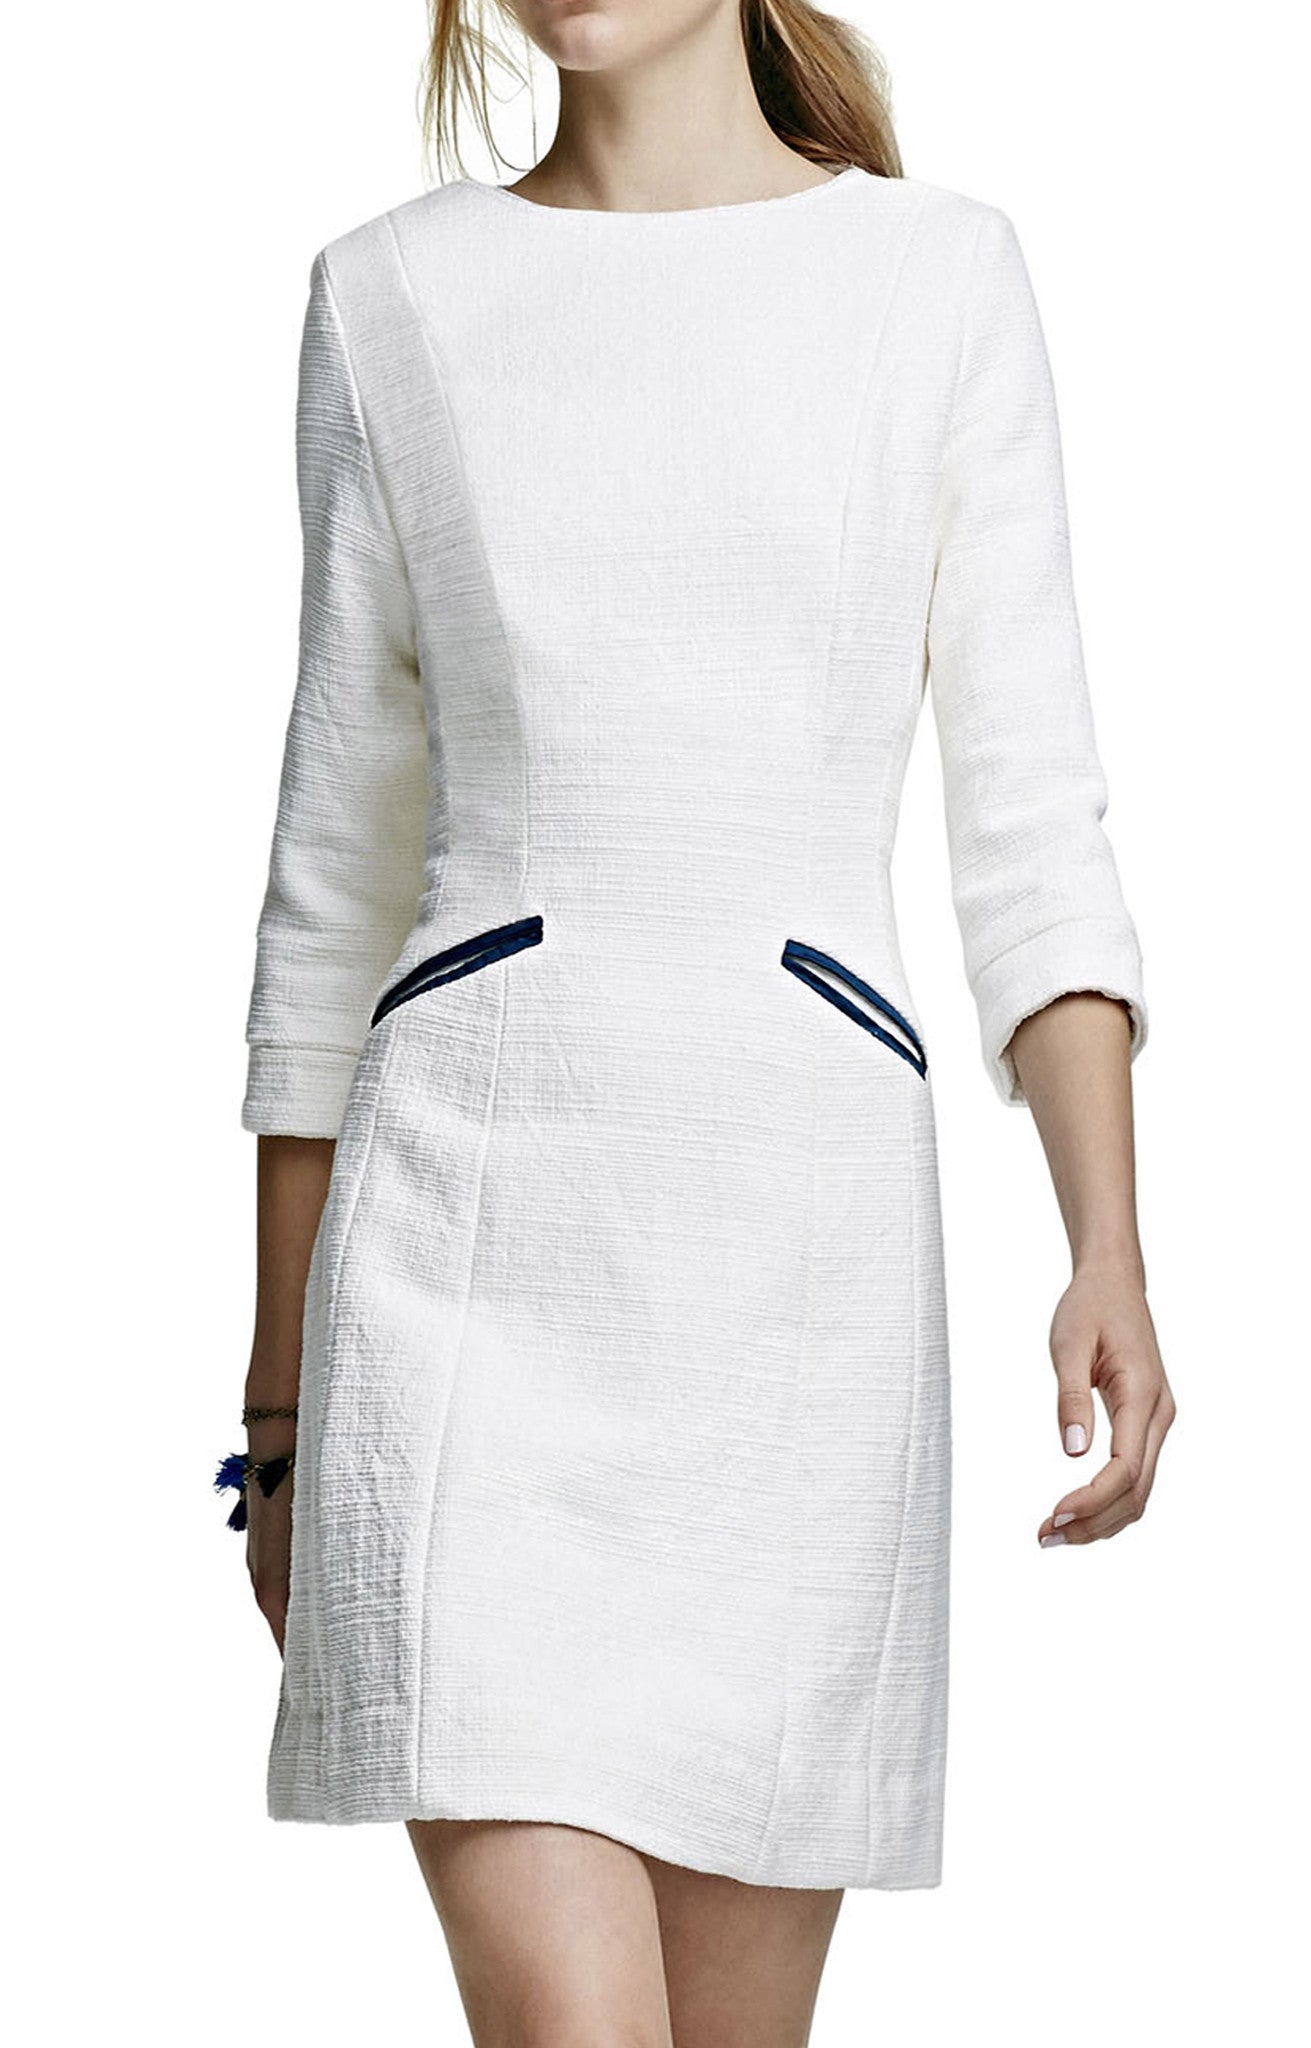 Slight A Line Dress with 3/4 Sleeve and Welt Pockets